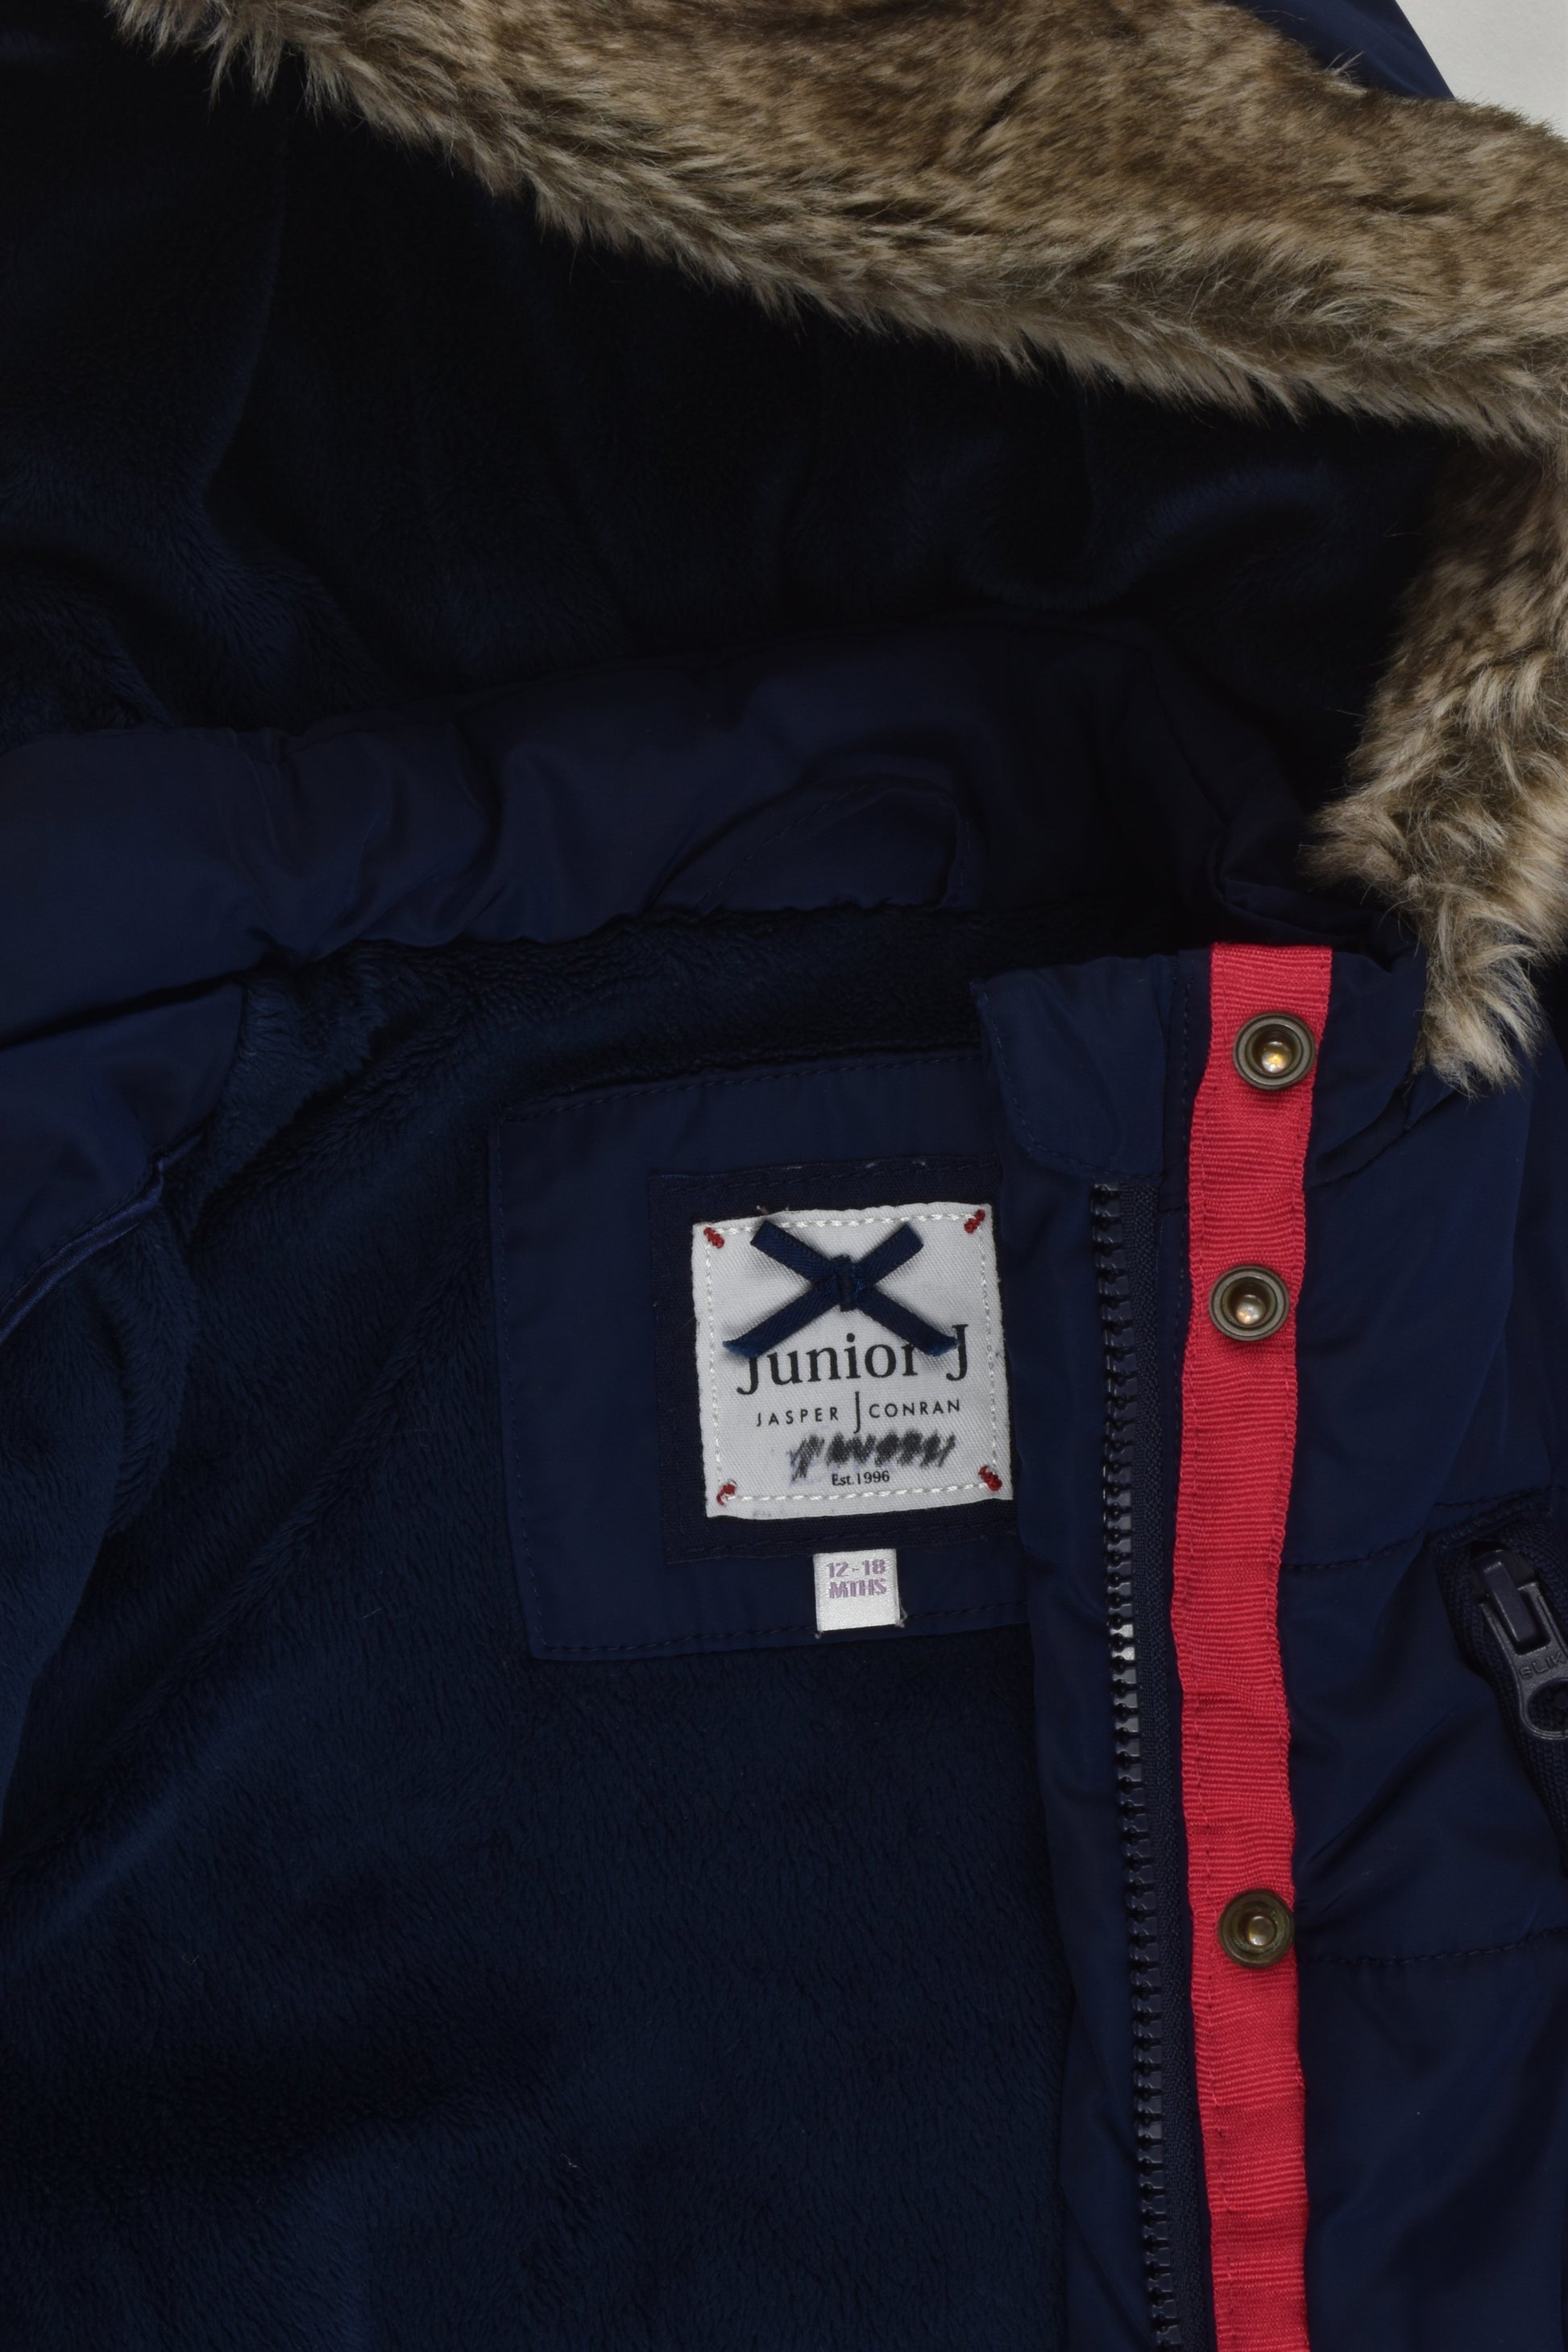 Jasper Conran by Debenhams Size 1 (12-18 months) Warm Winter Jacket